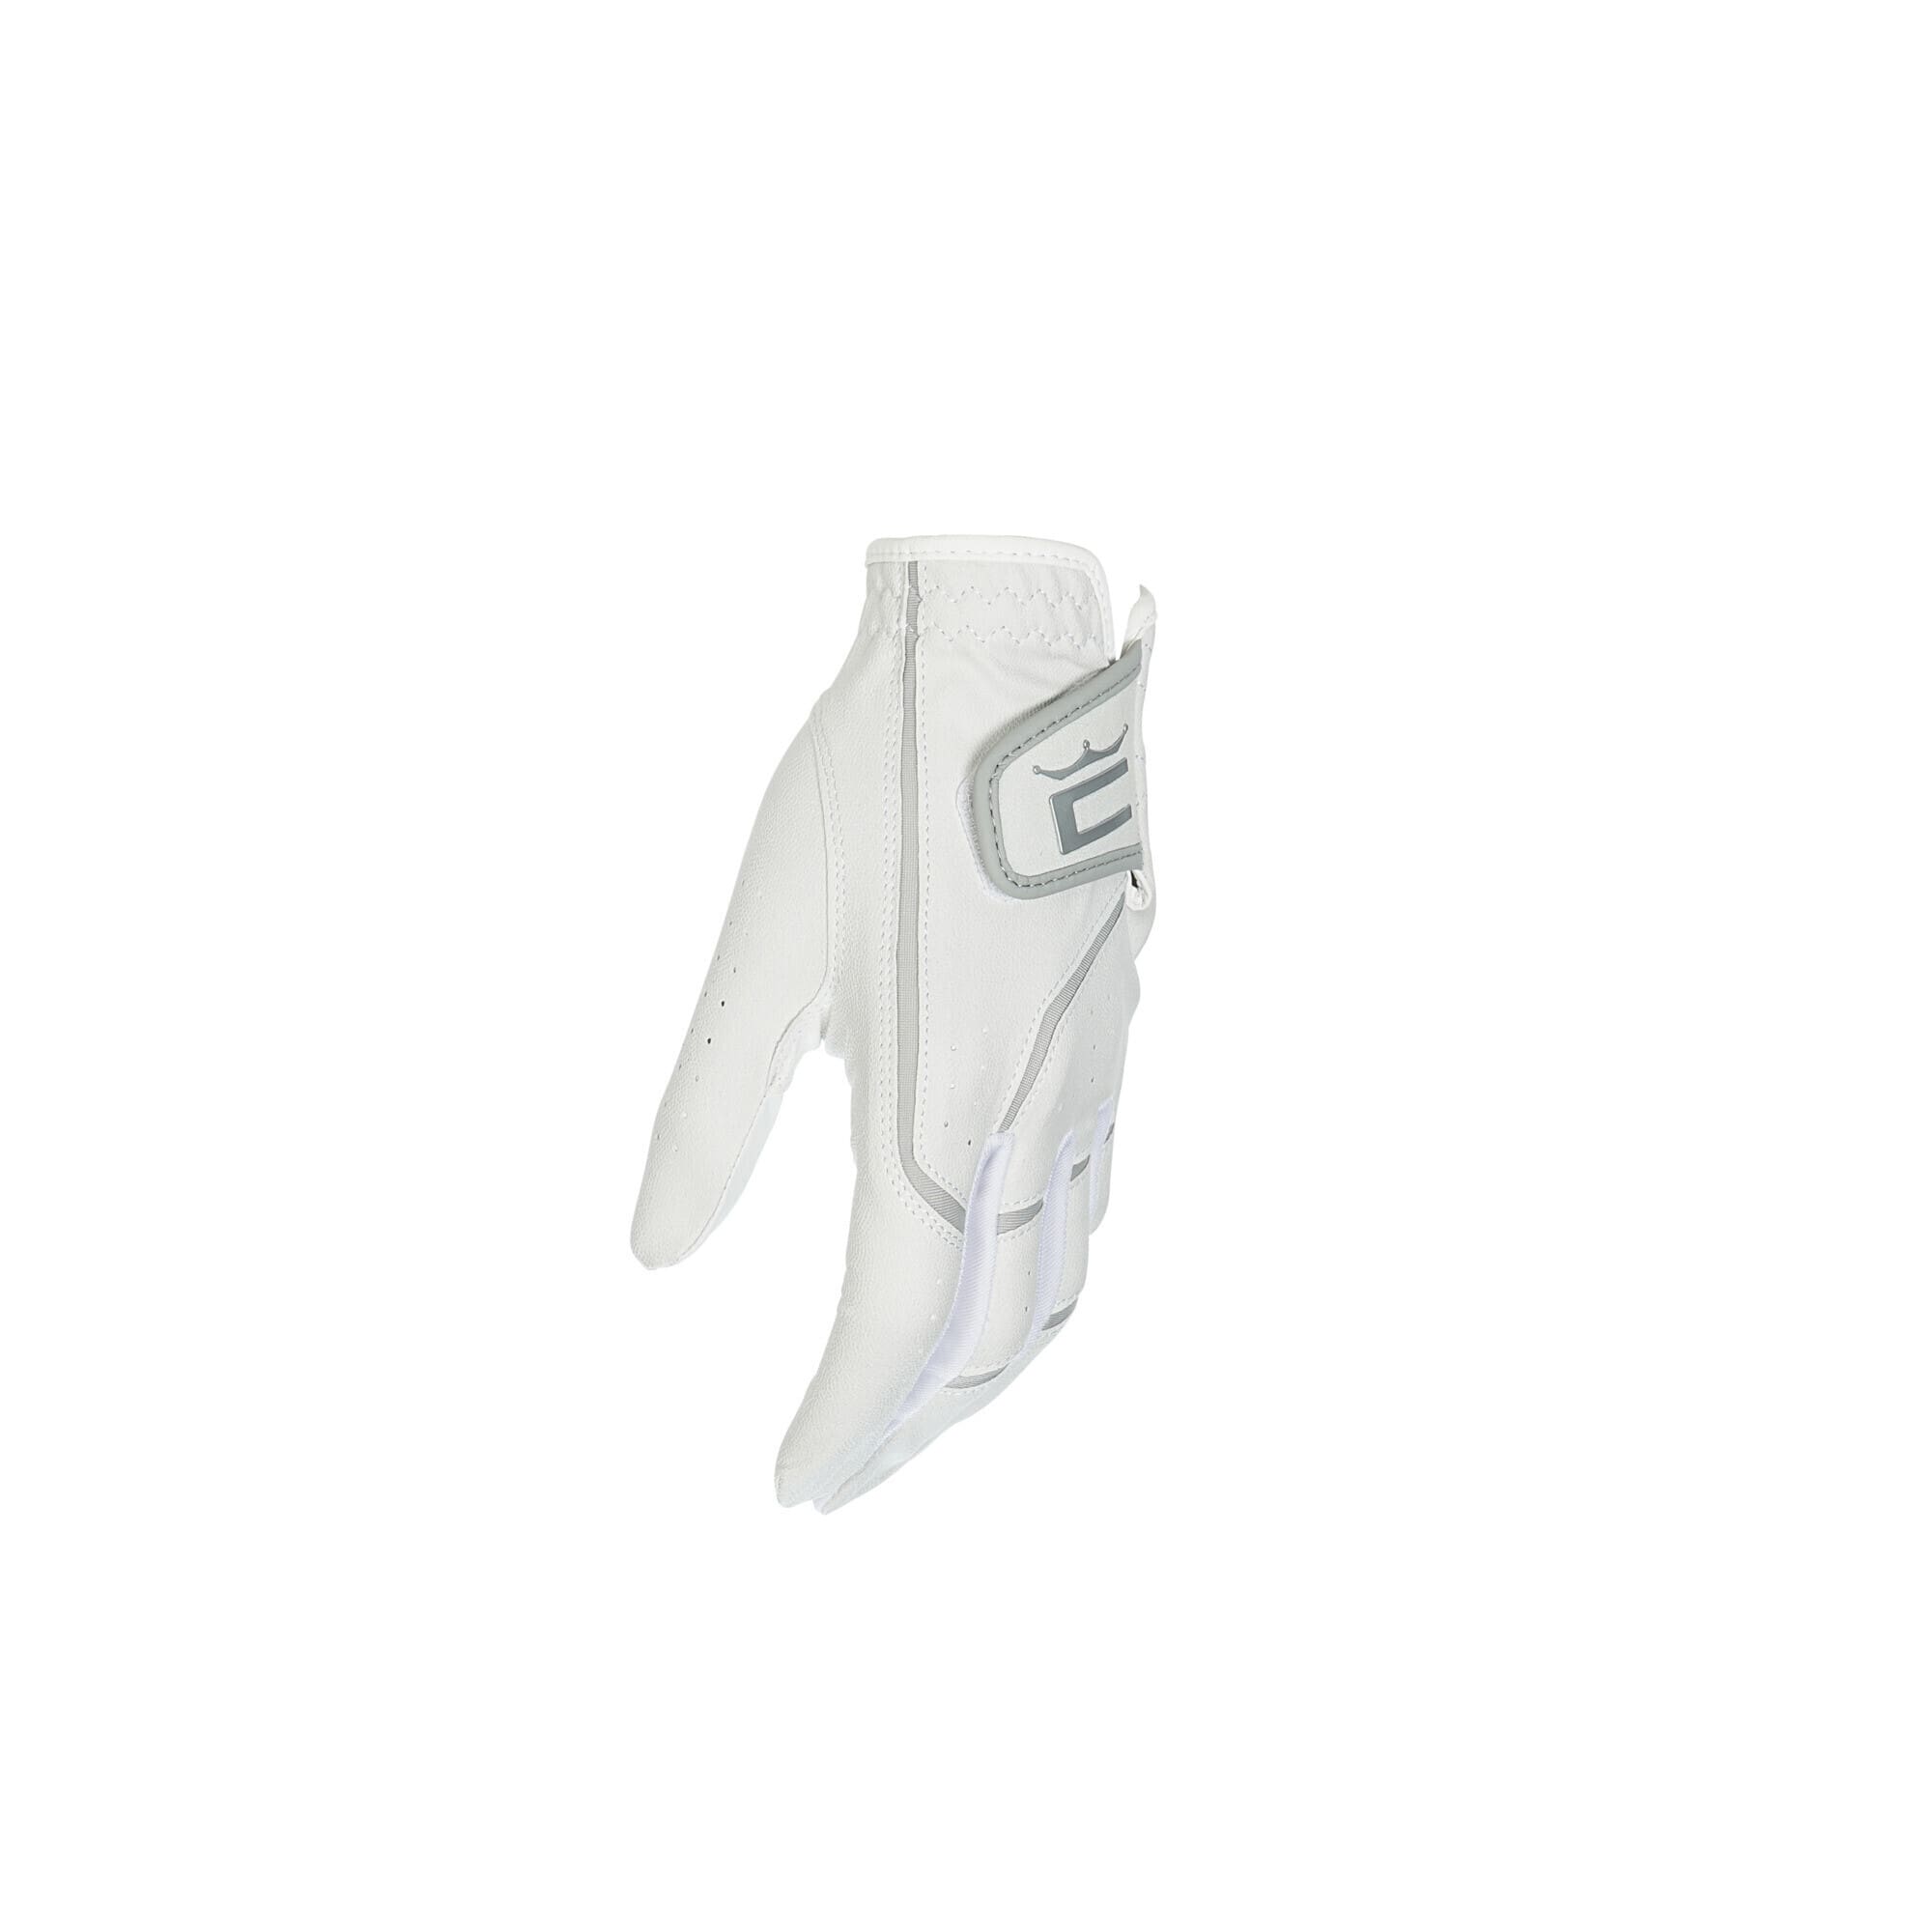 Microgrip flex lh handschoenen (dames)